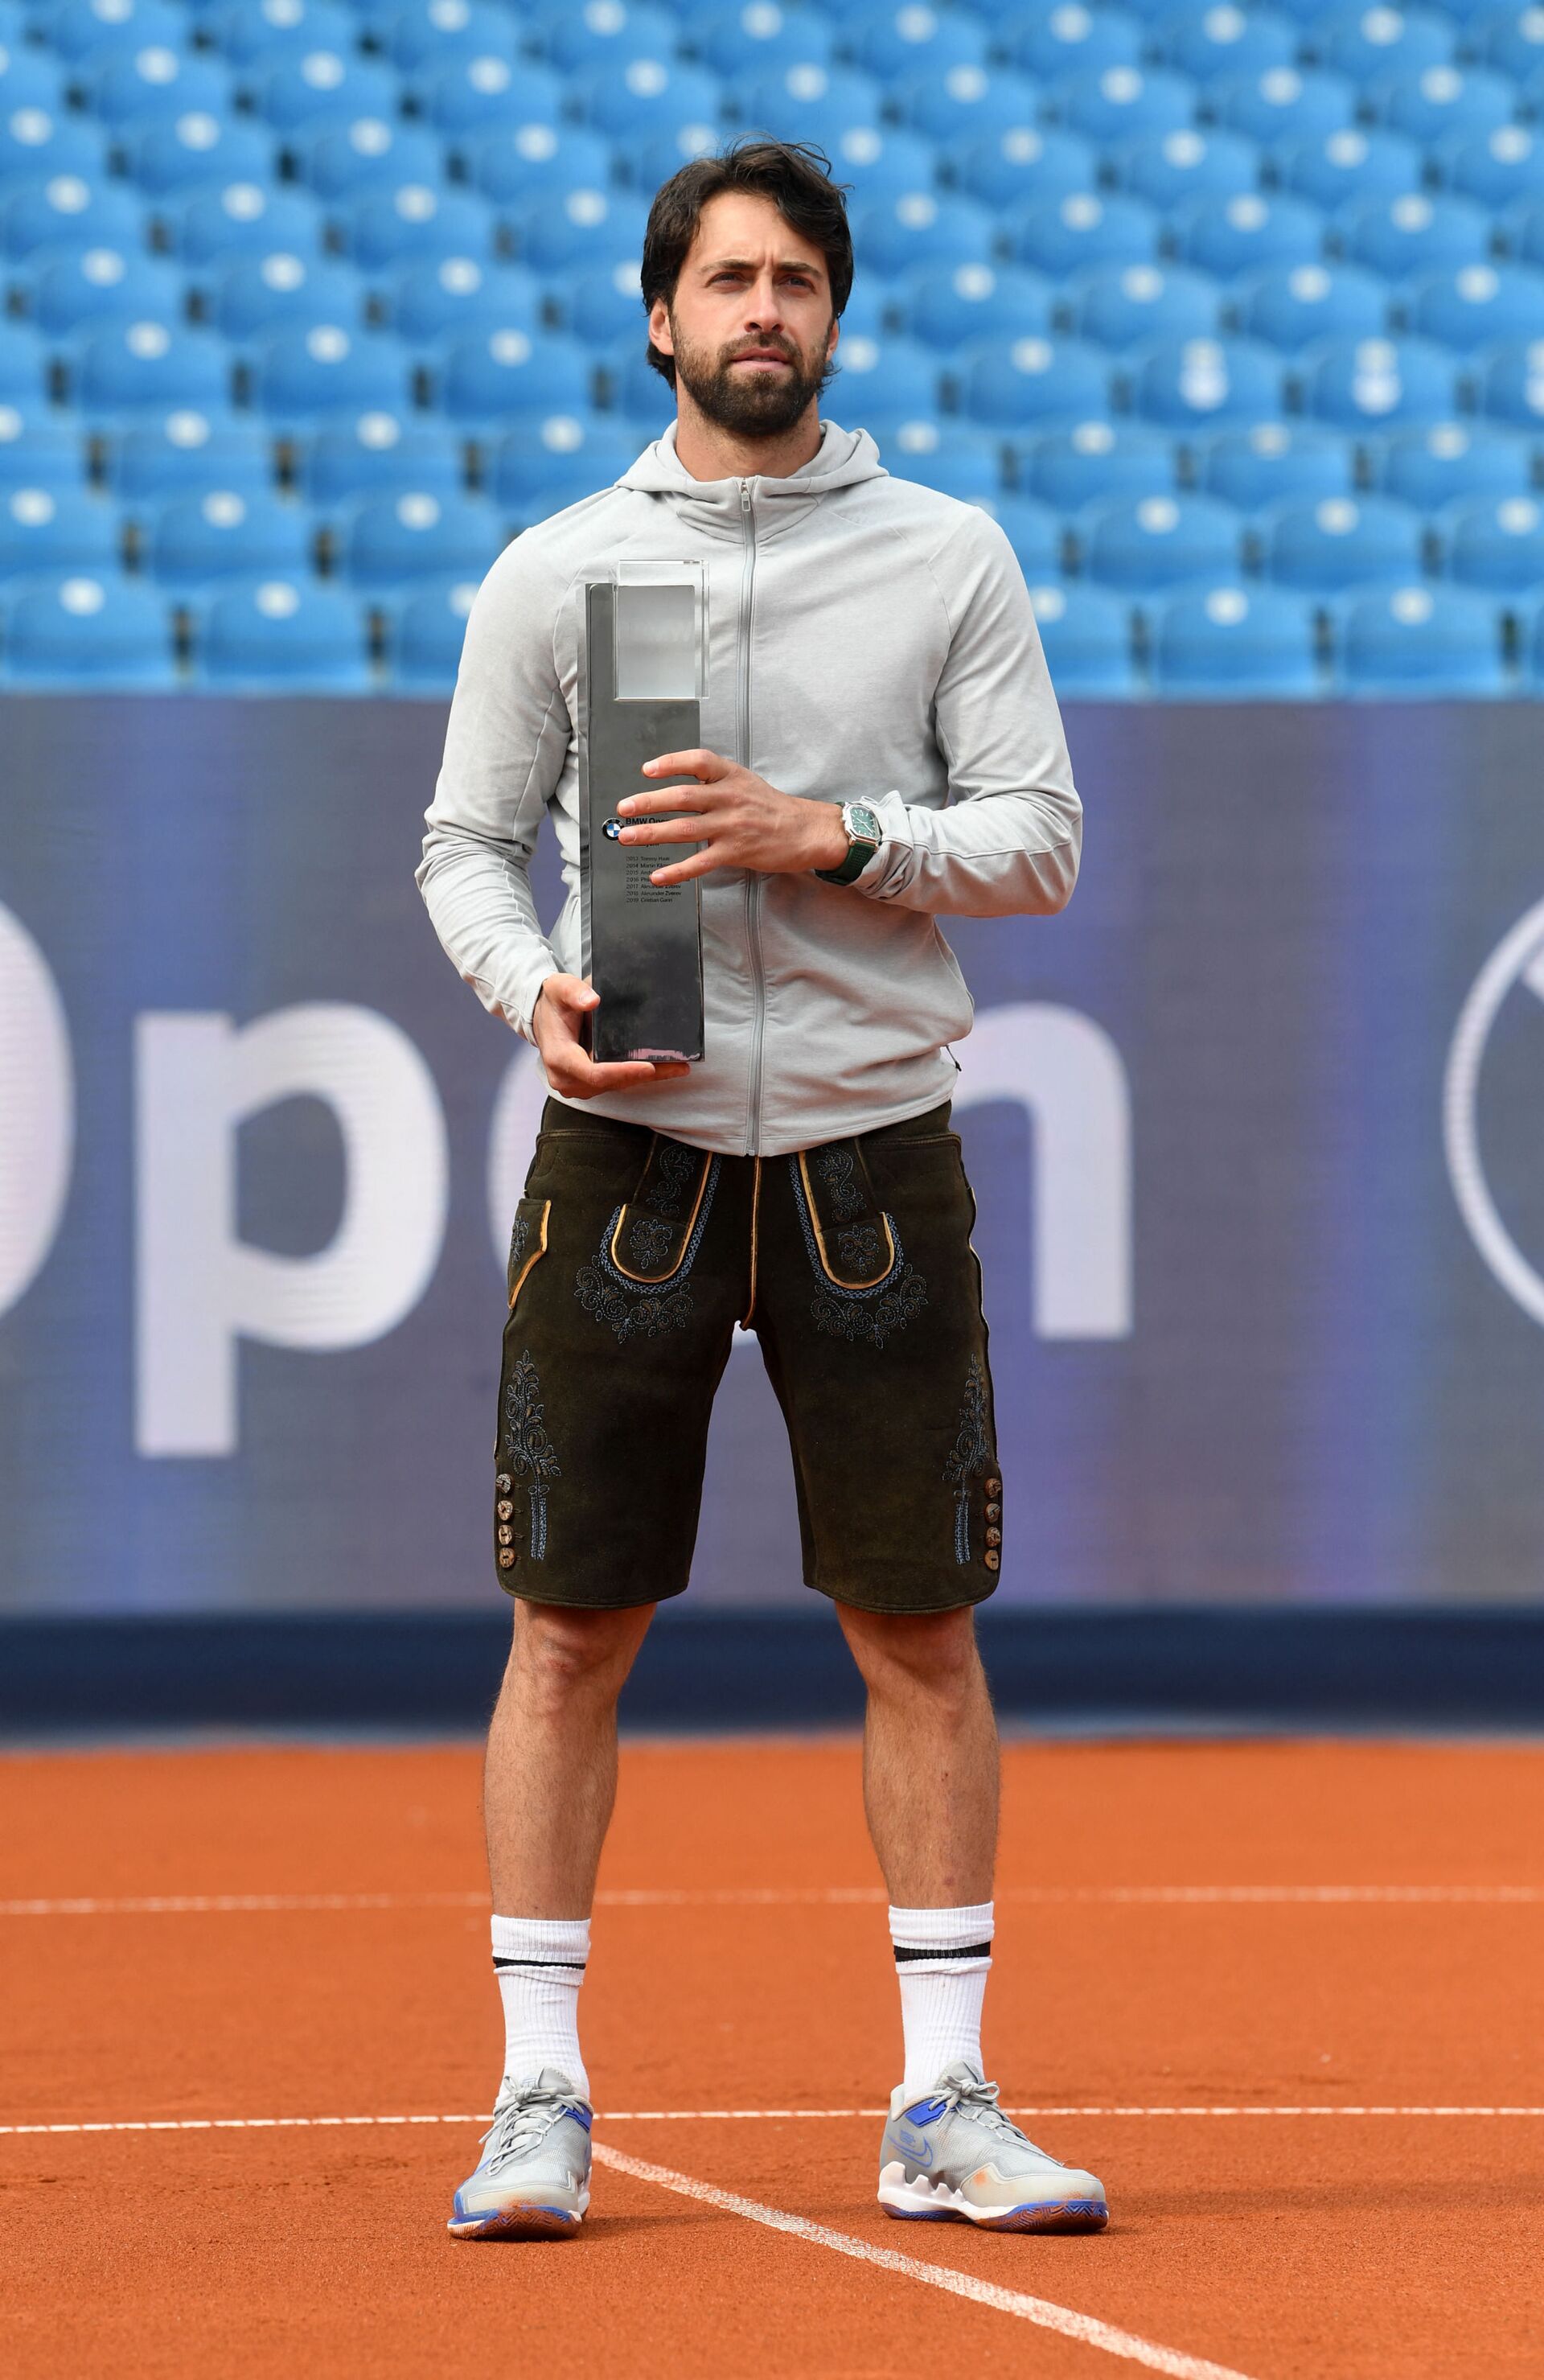 Теннисист Николоз Басилашвили выиграл турнир ATP - Sputnik Грузия, 1920, 24.08.2021